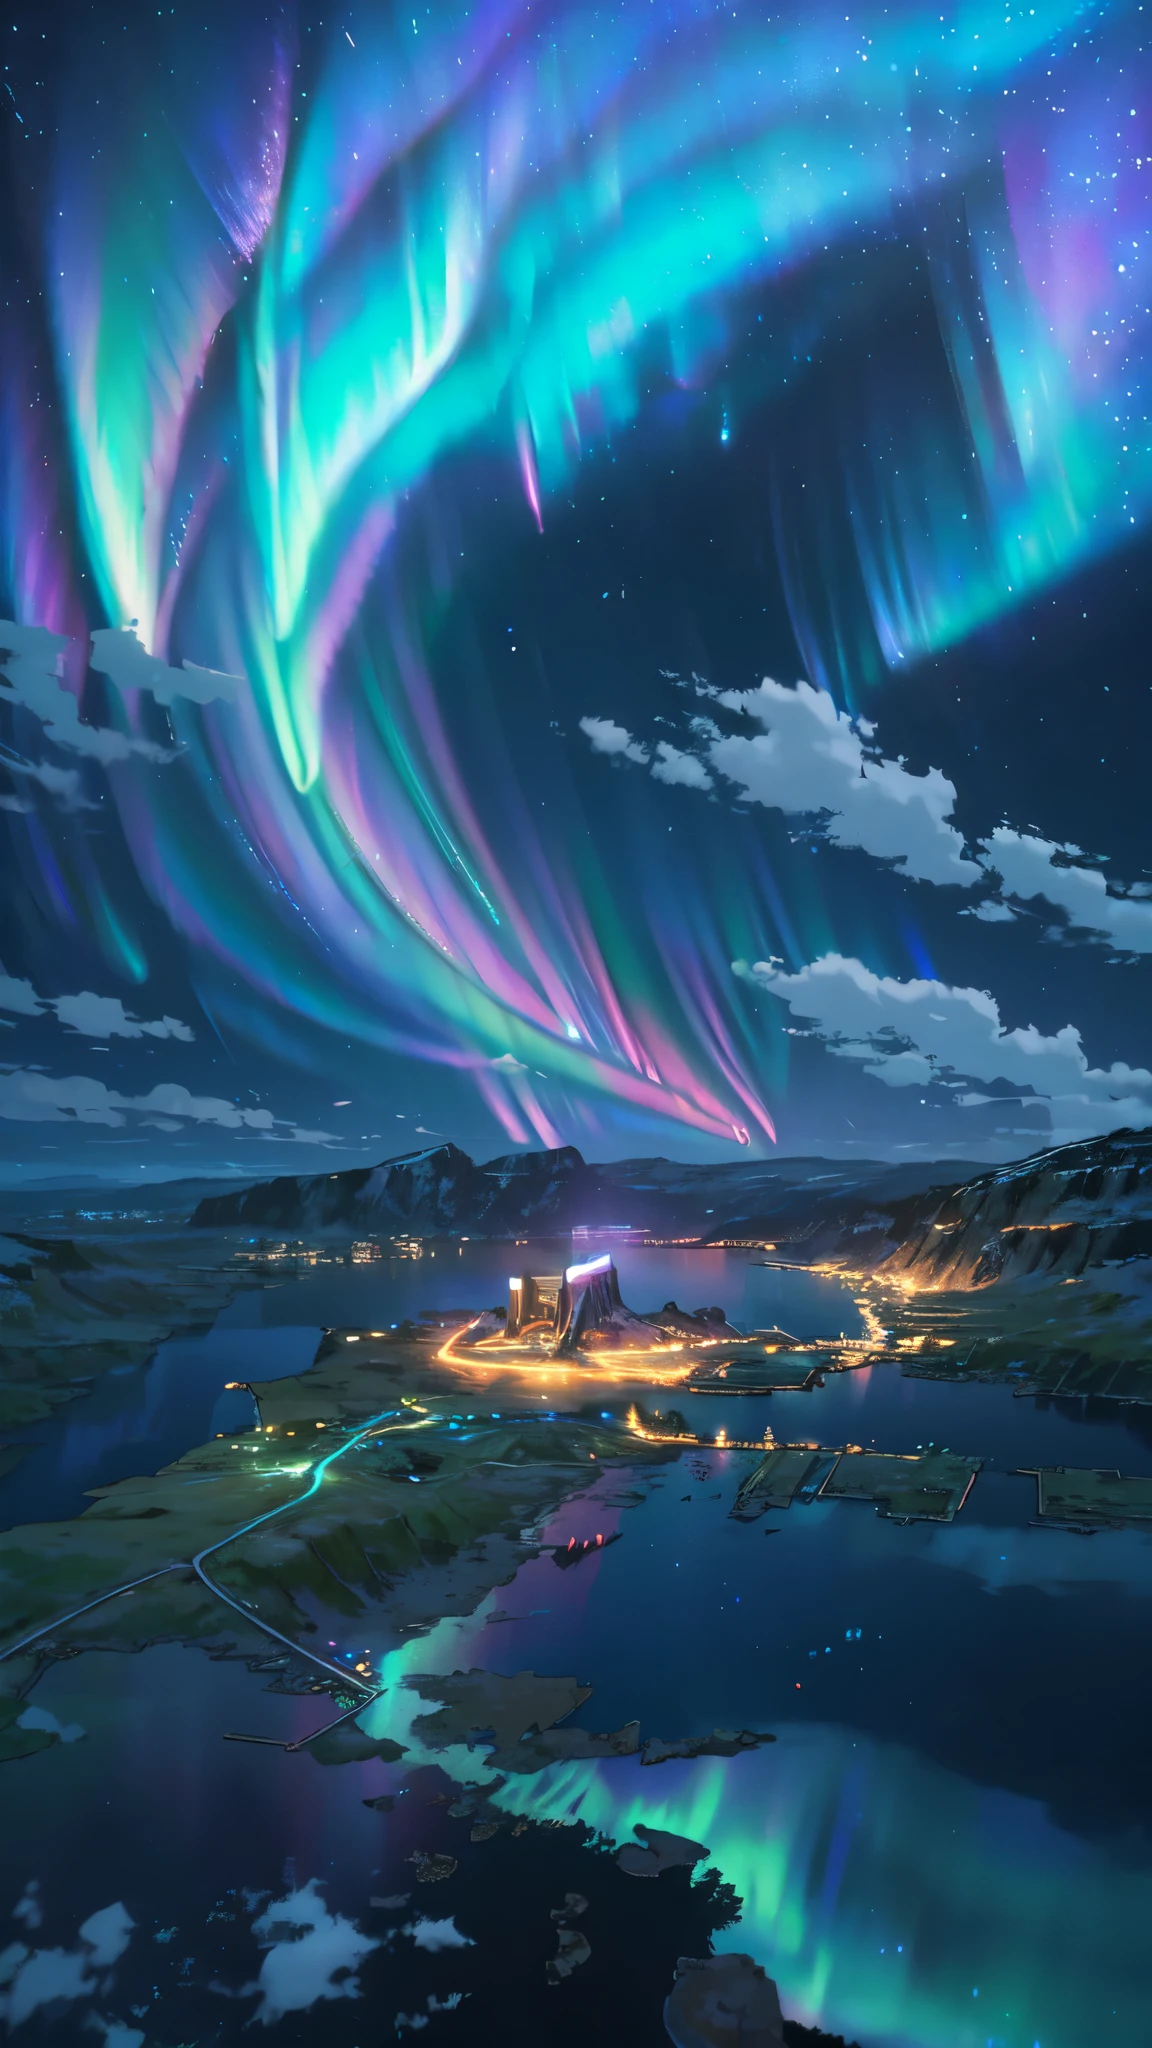 Landschaft, Ultra HD, (Hintergrund Asgard), Einzelheiten, Beleuchtung, 8k, (Nordlicht am Himmel), constellation, (Hintergrund Asgard), kleines Dorf unter den Lichtern